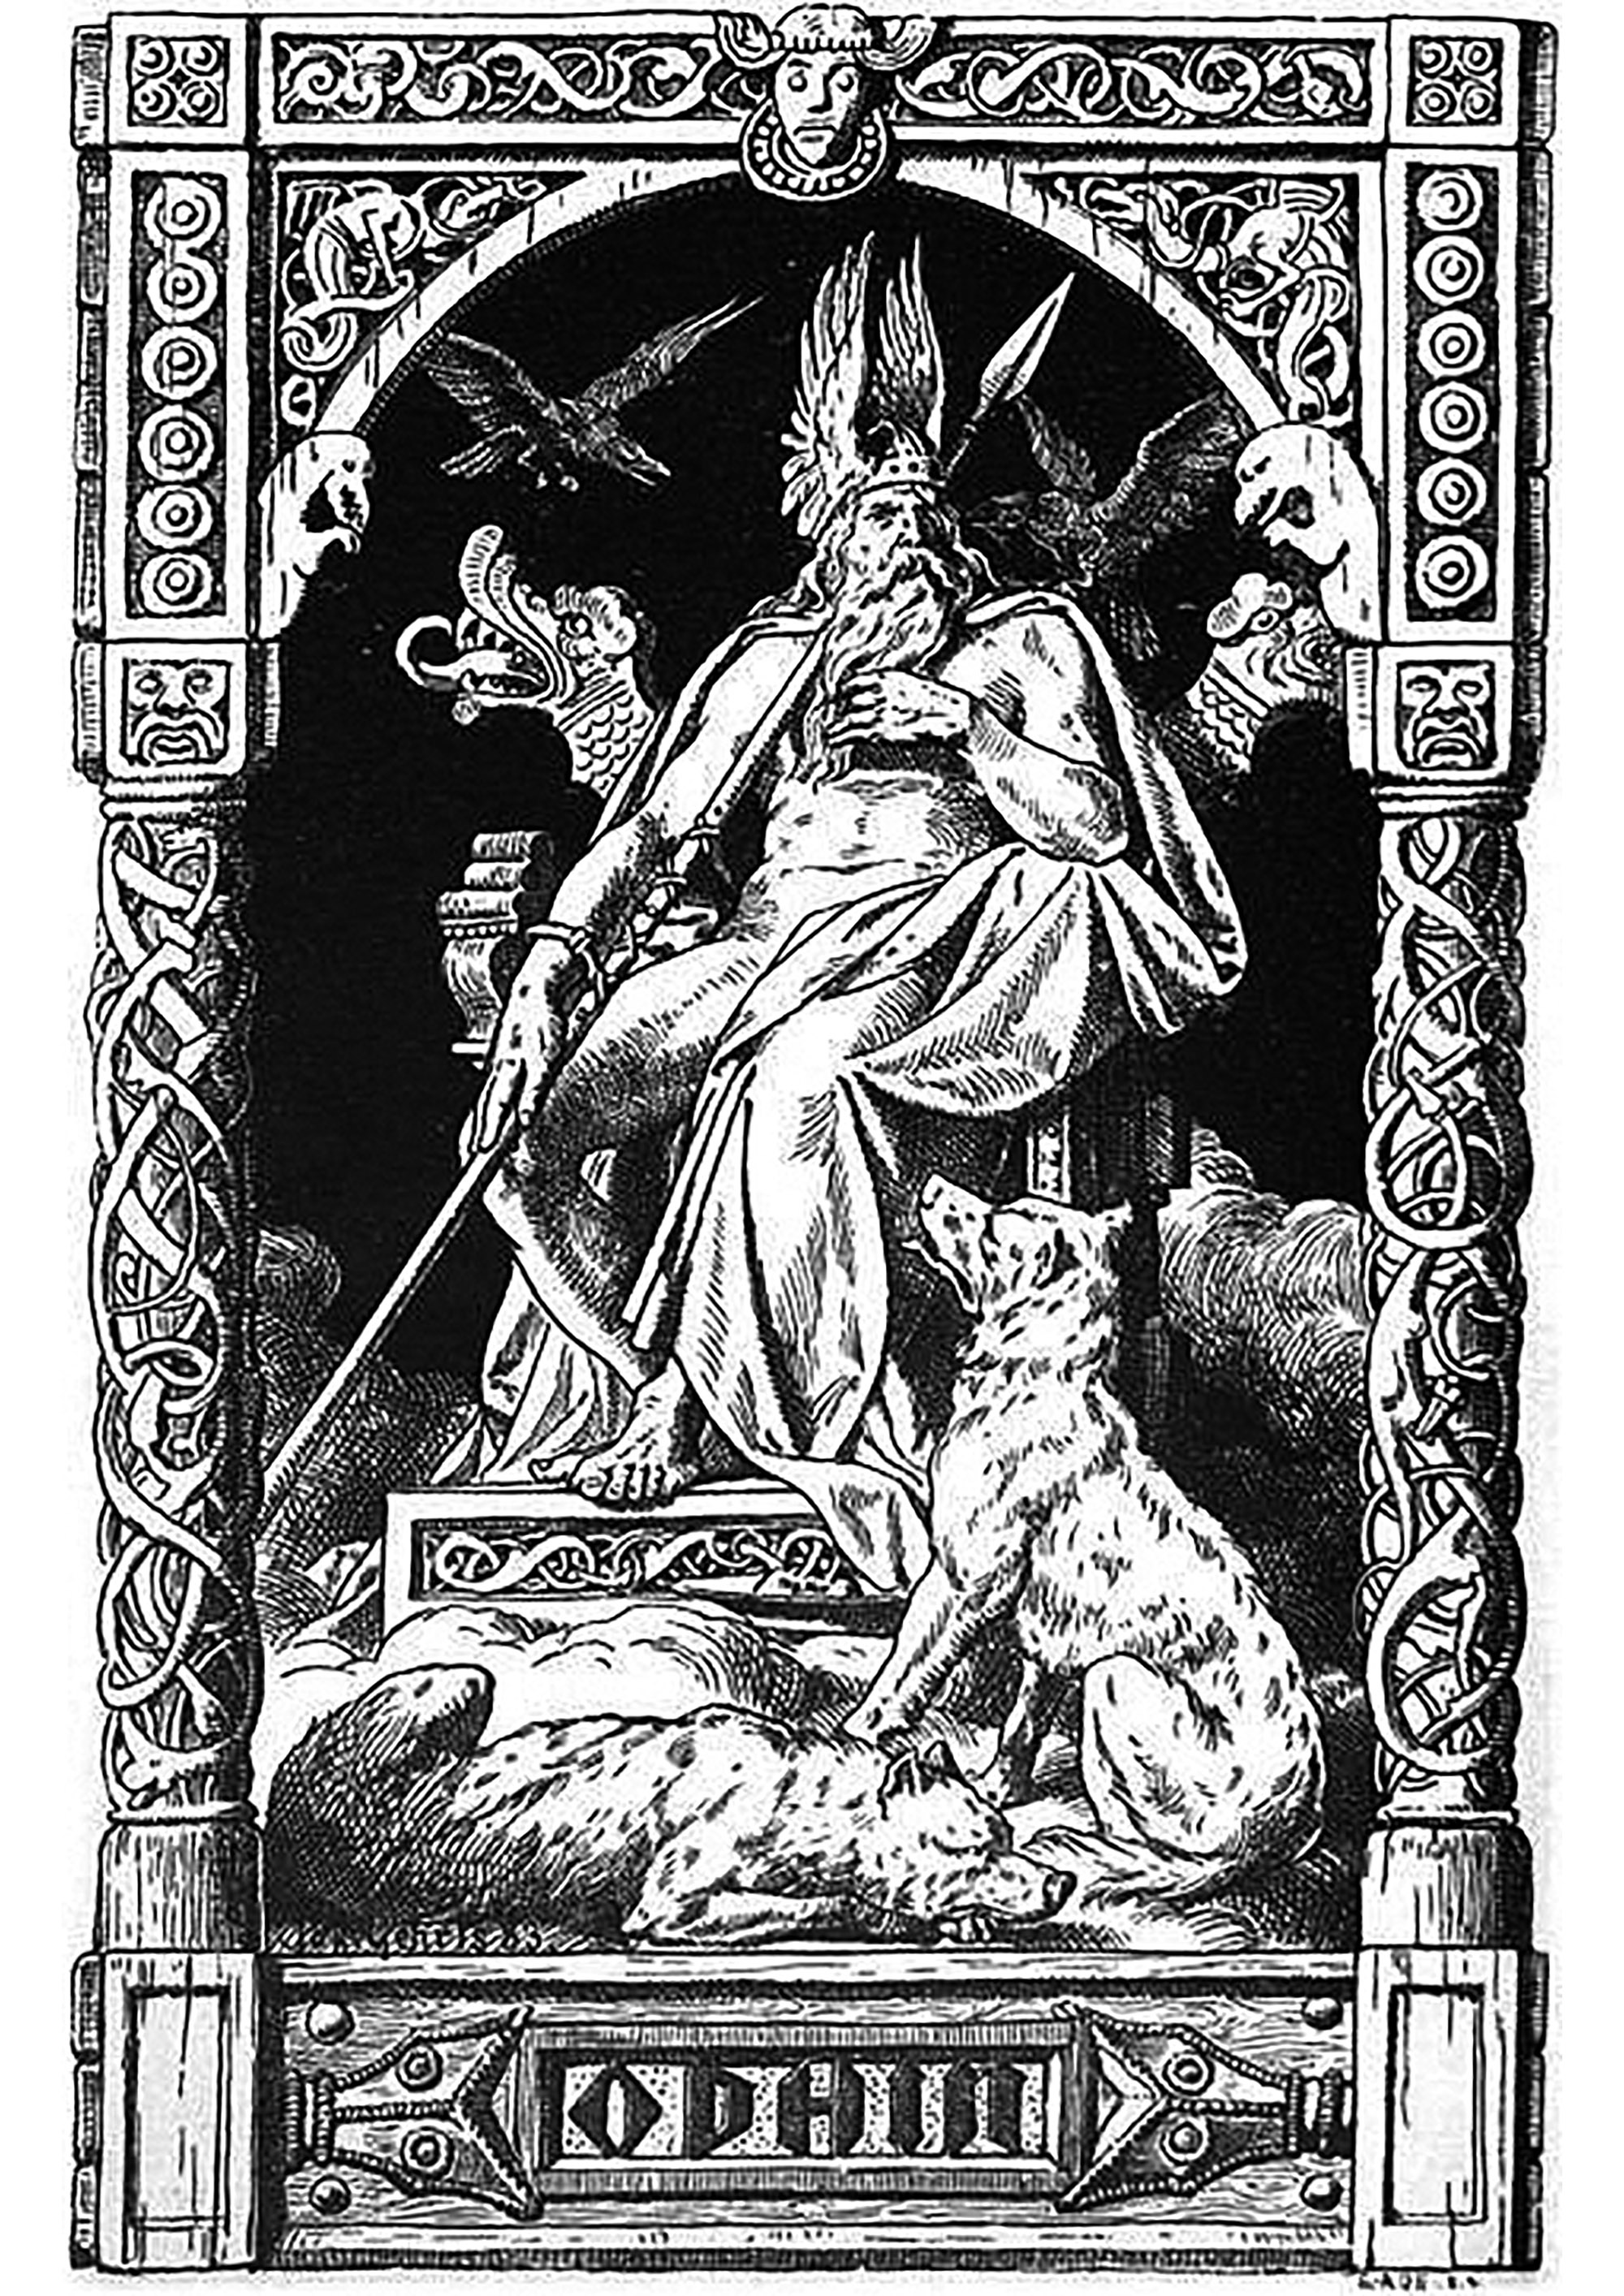 Odin - Illustration von Johannes Gehrts (1855, 1921). Diese Illustration zeigt Odin, den Hauptgott der nordischen Mythologie, auf seinem Thron thronend. Er ist umgeben von seinen beiden Raben Hugin und Munin, die als seine Boten ihm alles berichten, was in der Welt geschieht.